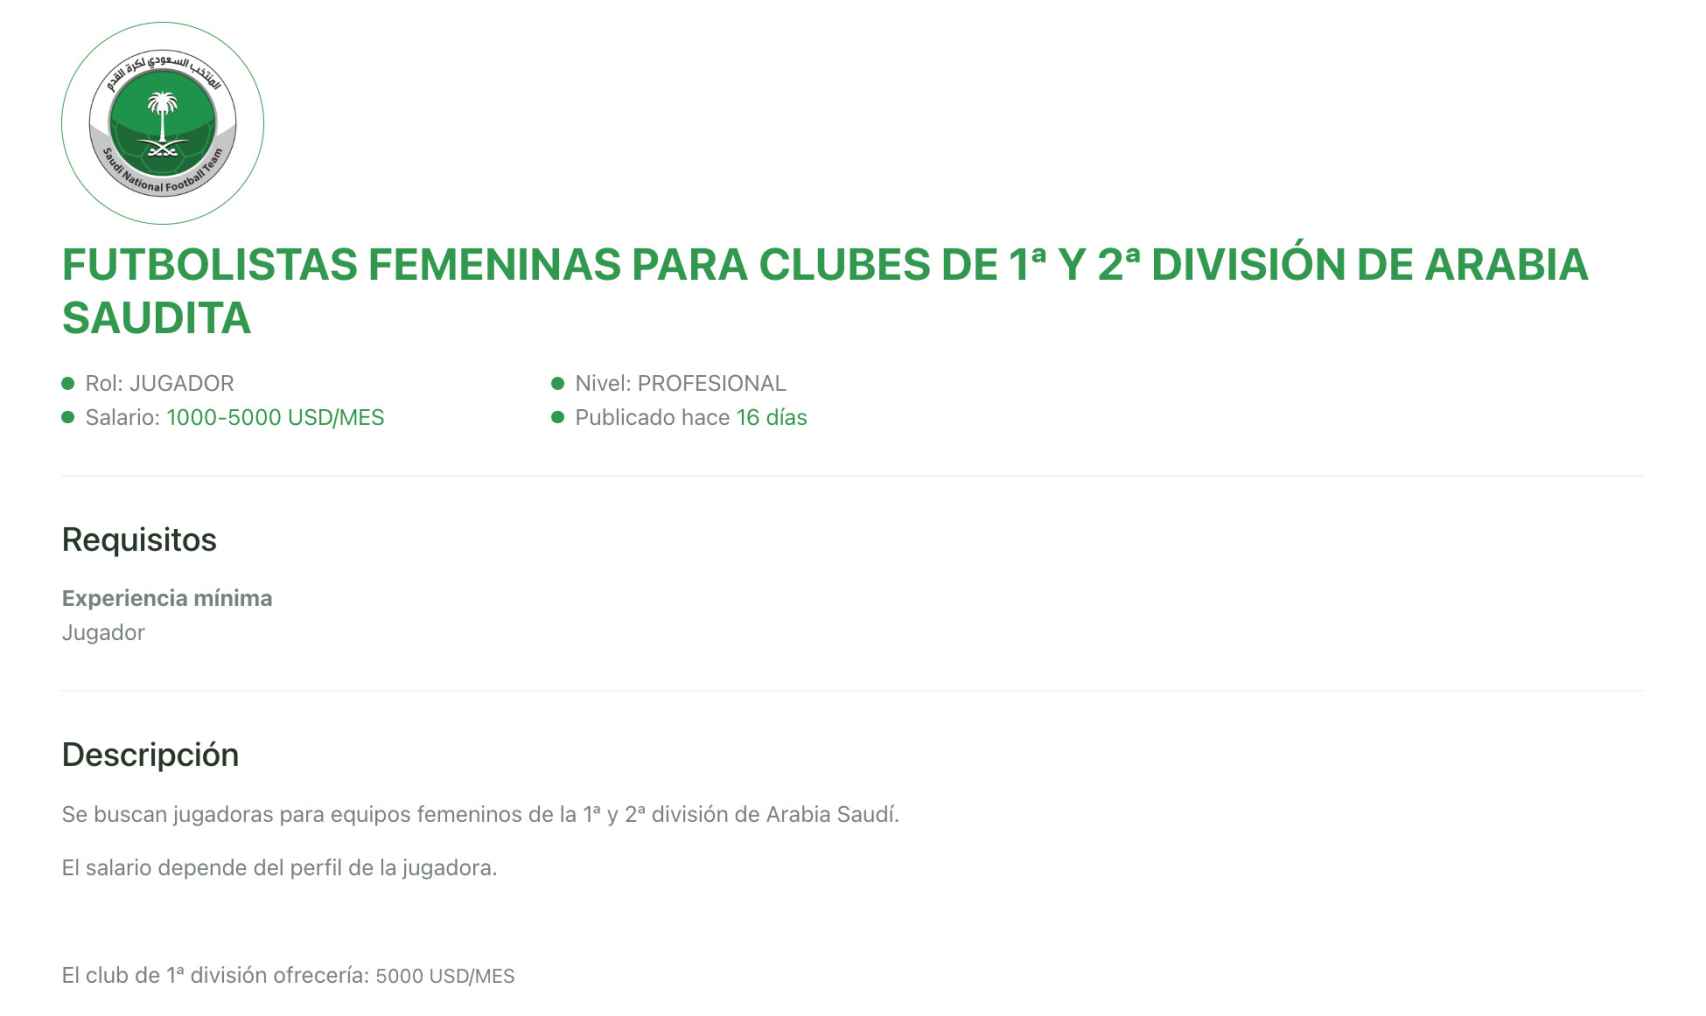 Oferta en FútbolJobs de la liga femenina de Arabia Saudí